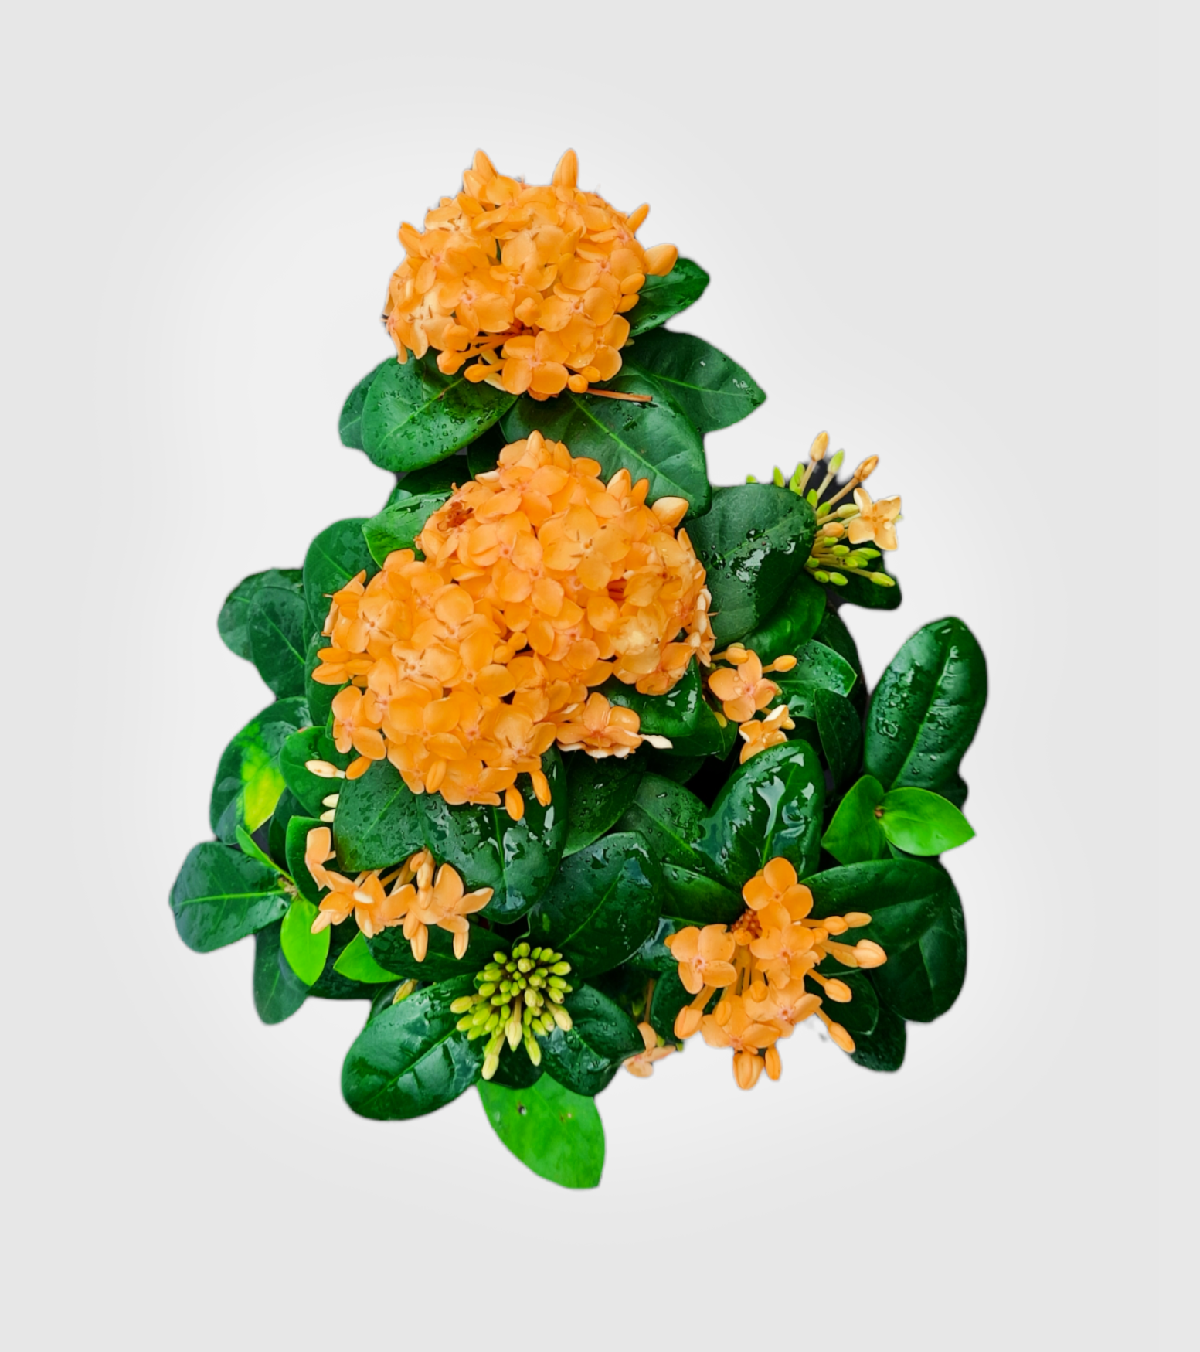 Ixora [Rugmini] Plant - Dark Orange